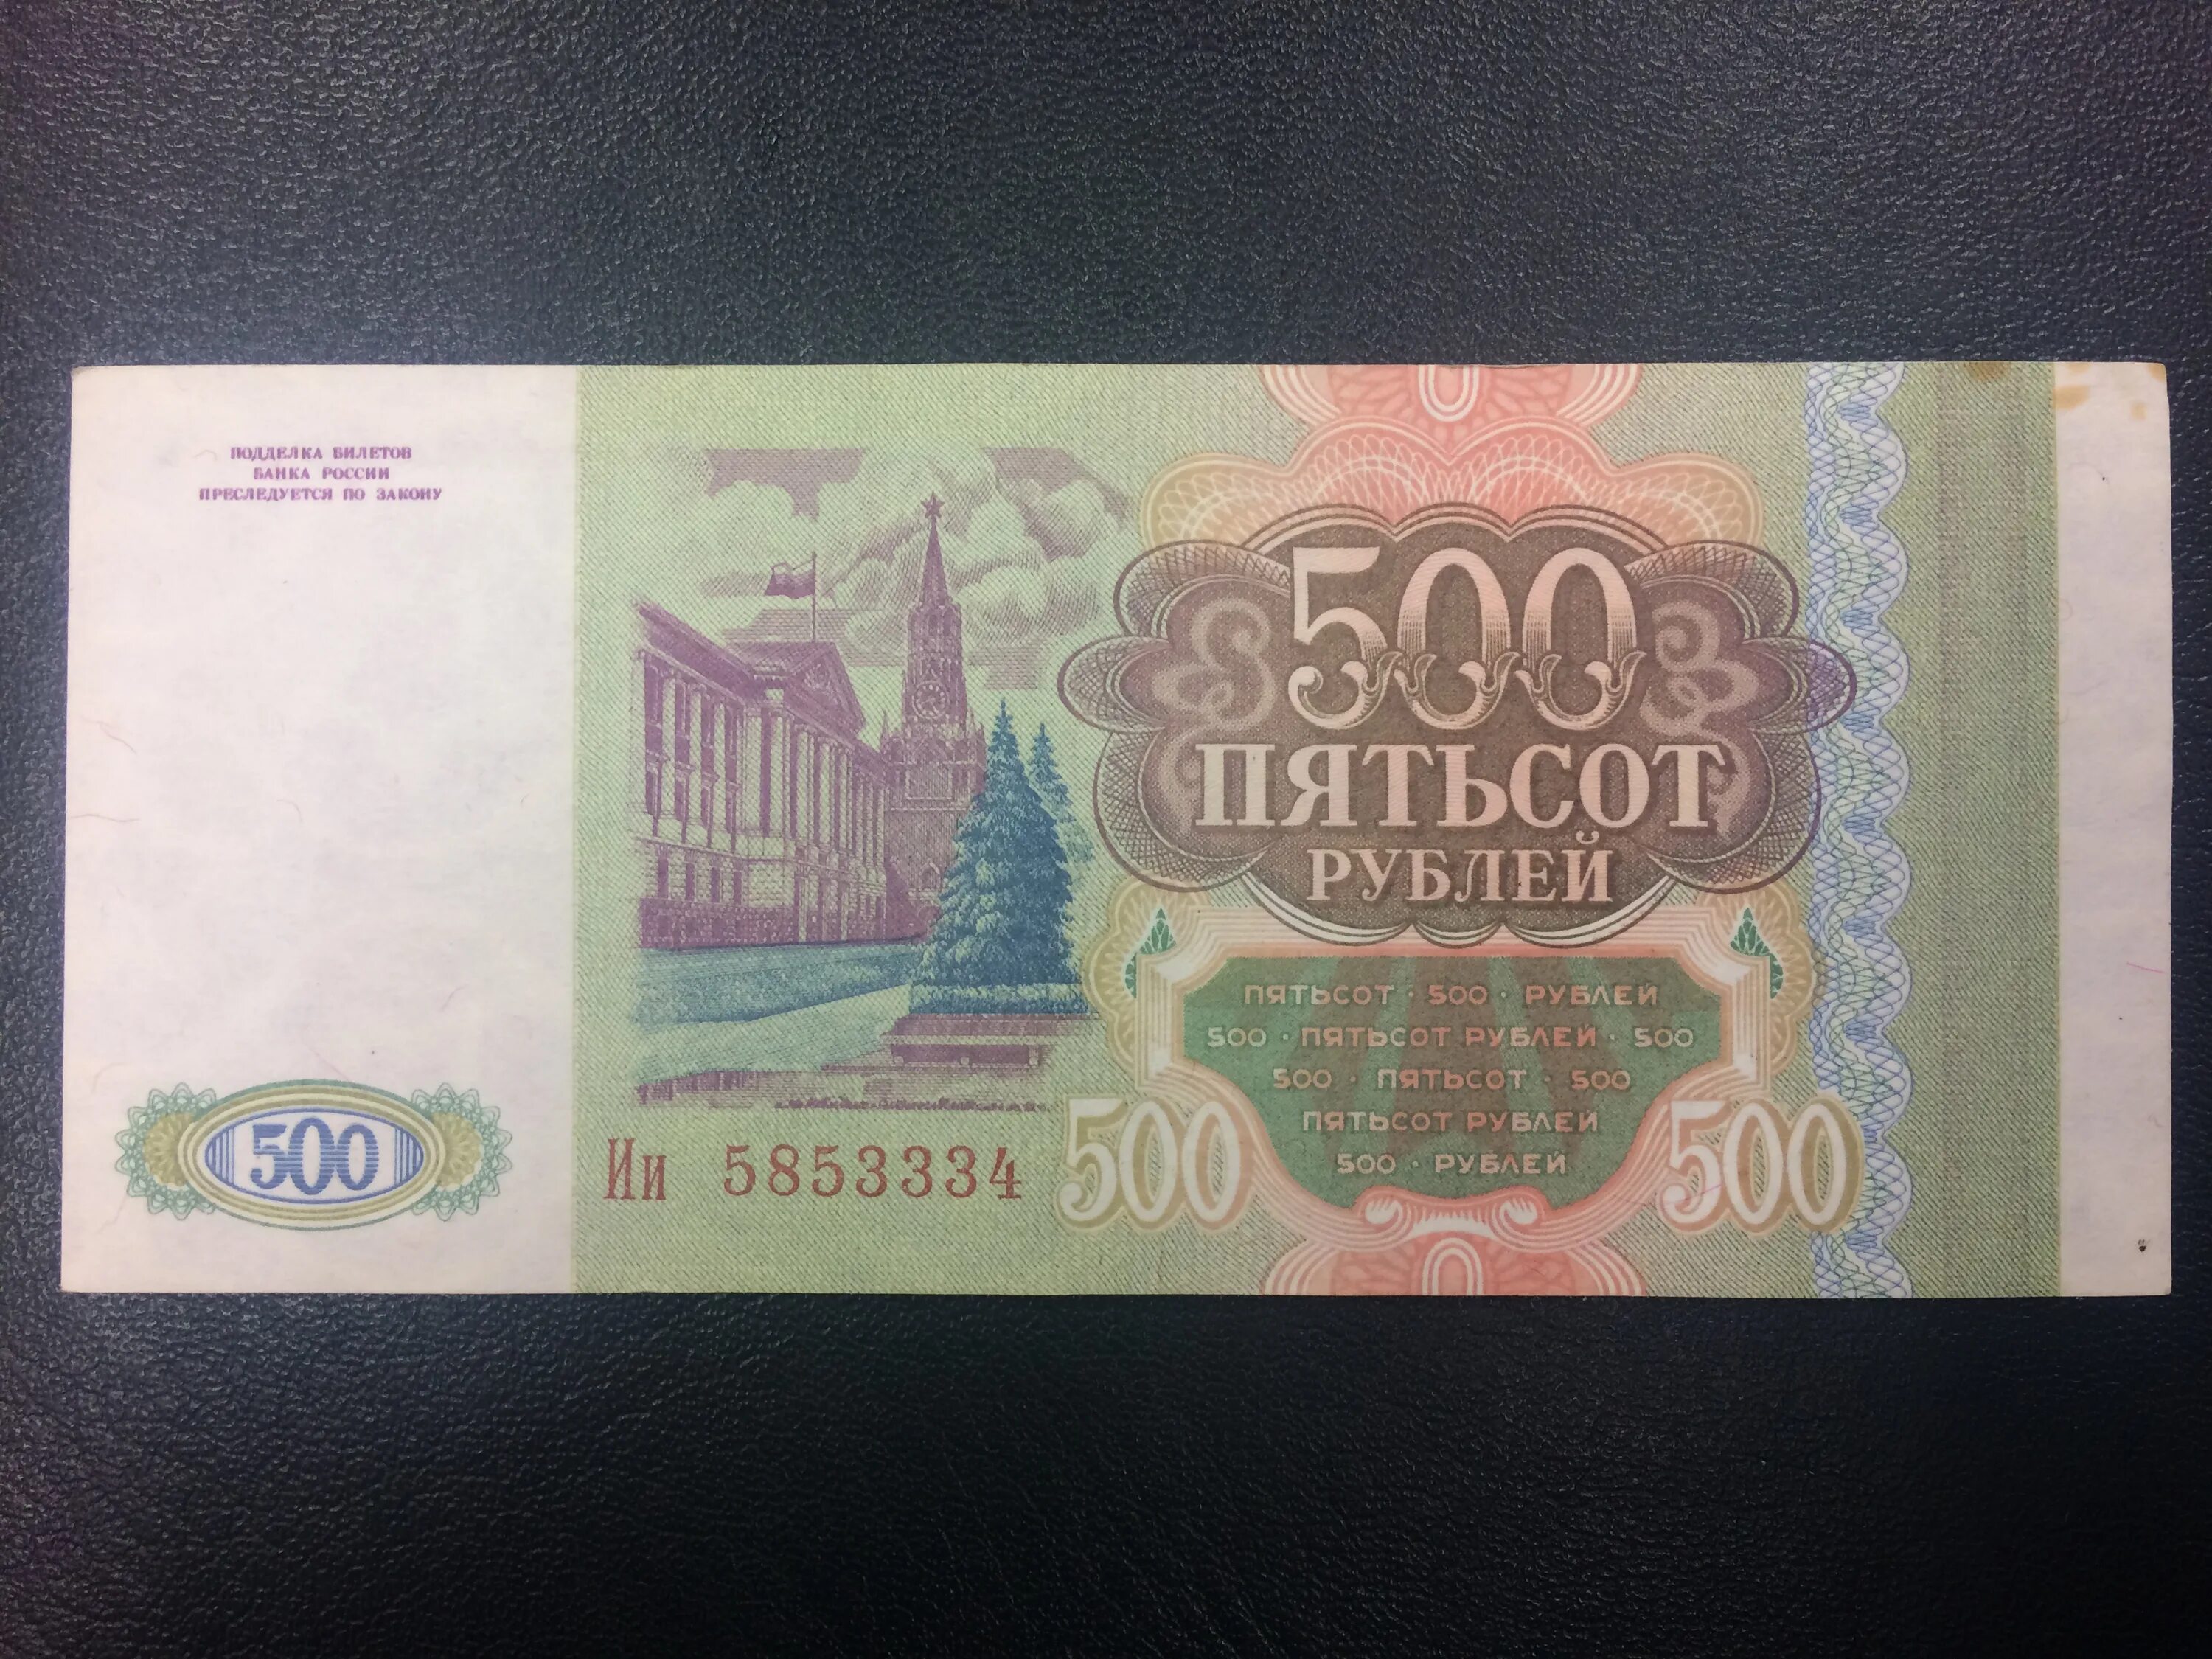 500 Рублей 1993. Купюра 500 рублей 1993 года. Пятьсот рублей 1993 года. Купюра 500 рублей 1993.